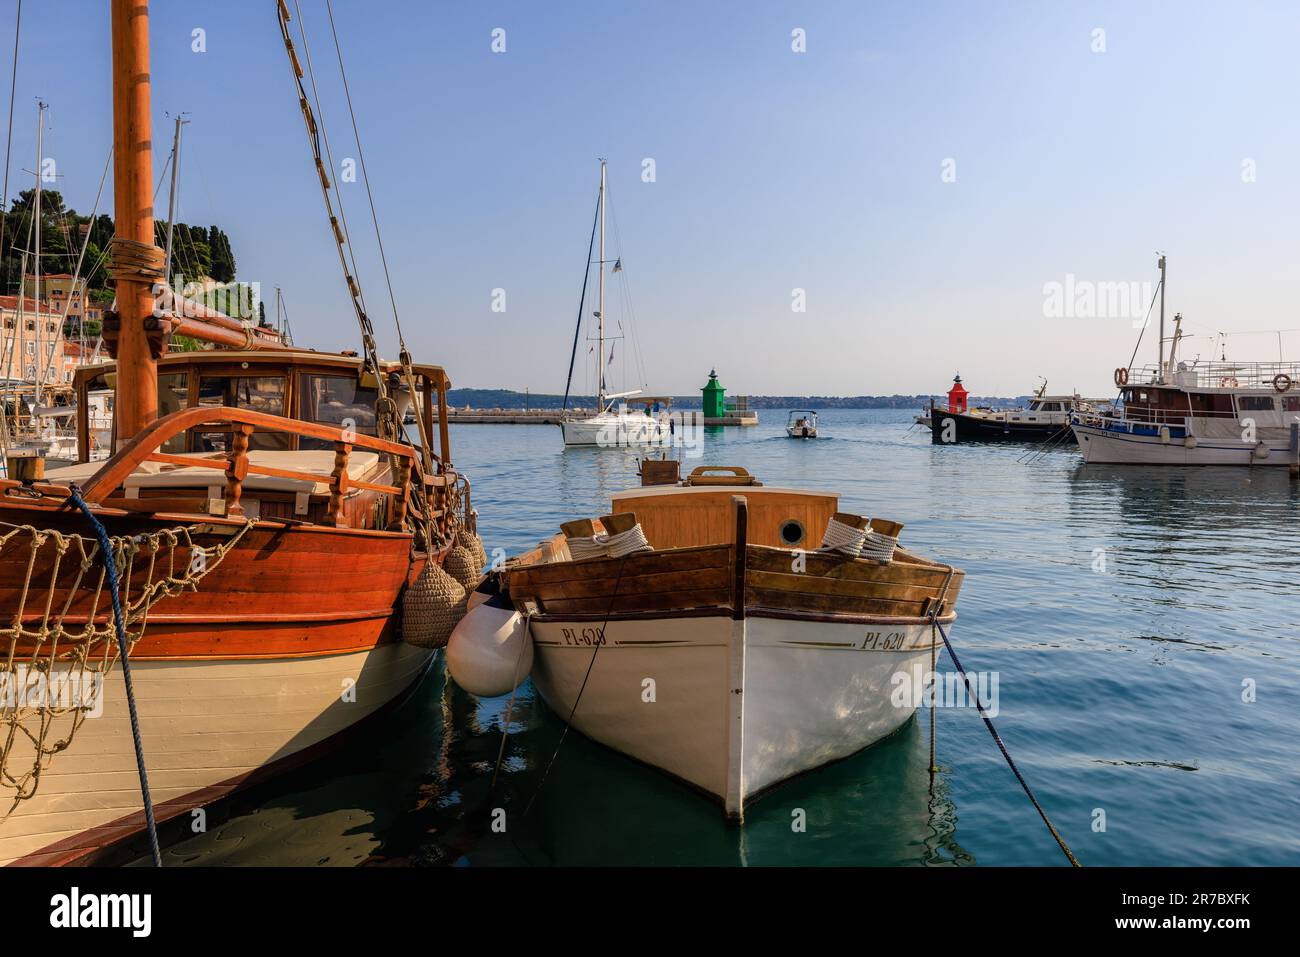 Hölzerne Boote, die auf einem ruhigen Meer im Hafen von Piran festgemacht sind, während eine Yacht an den grünen und roten Leuchttürmen des Hafens vorbeisegelt Stockfoto